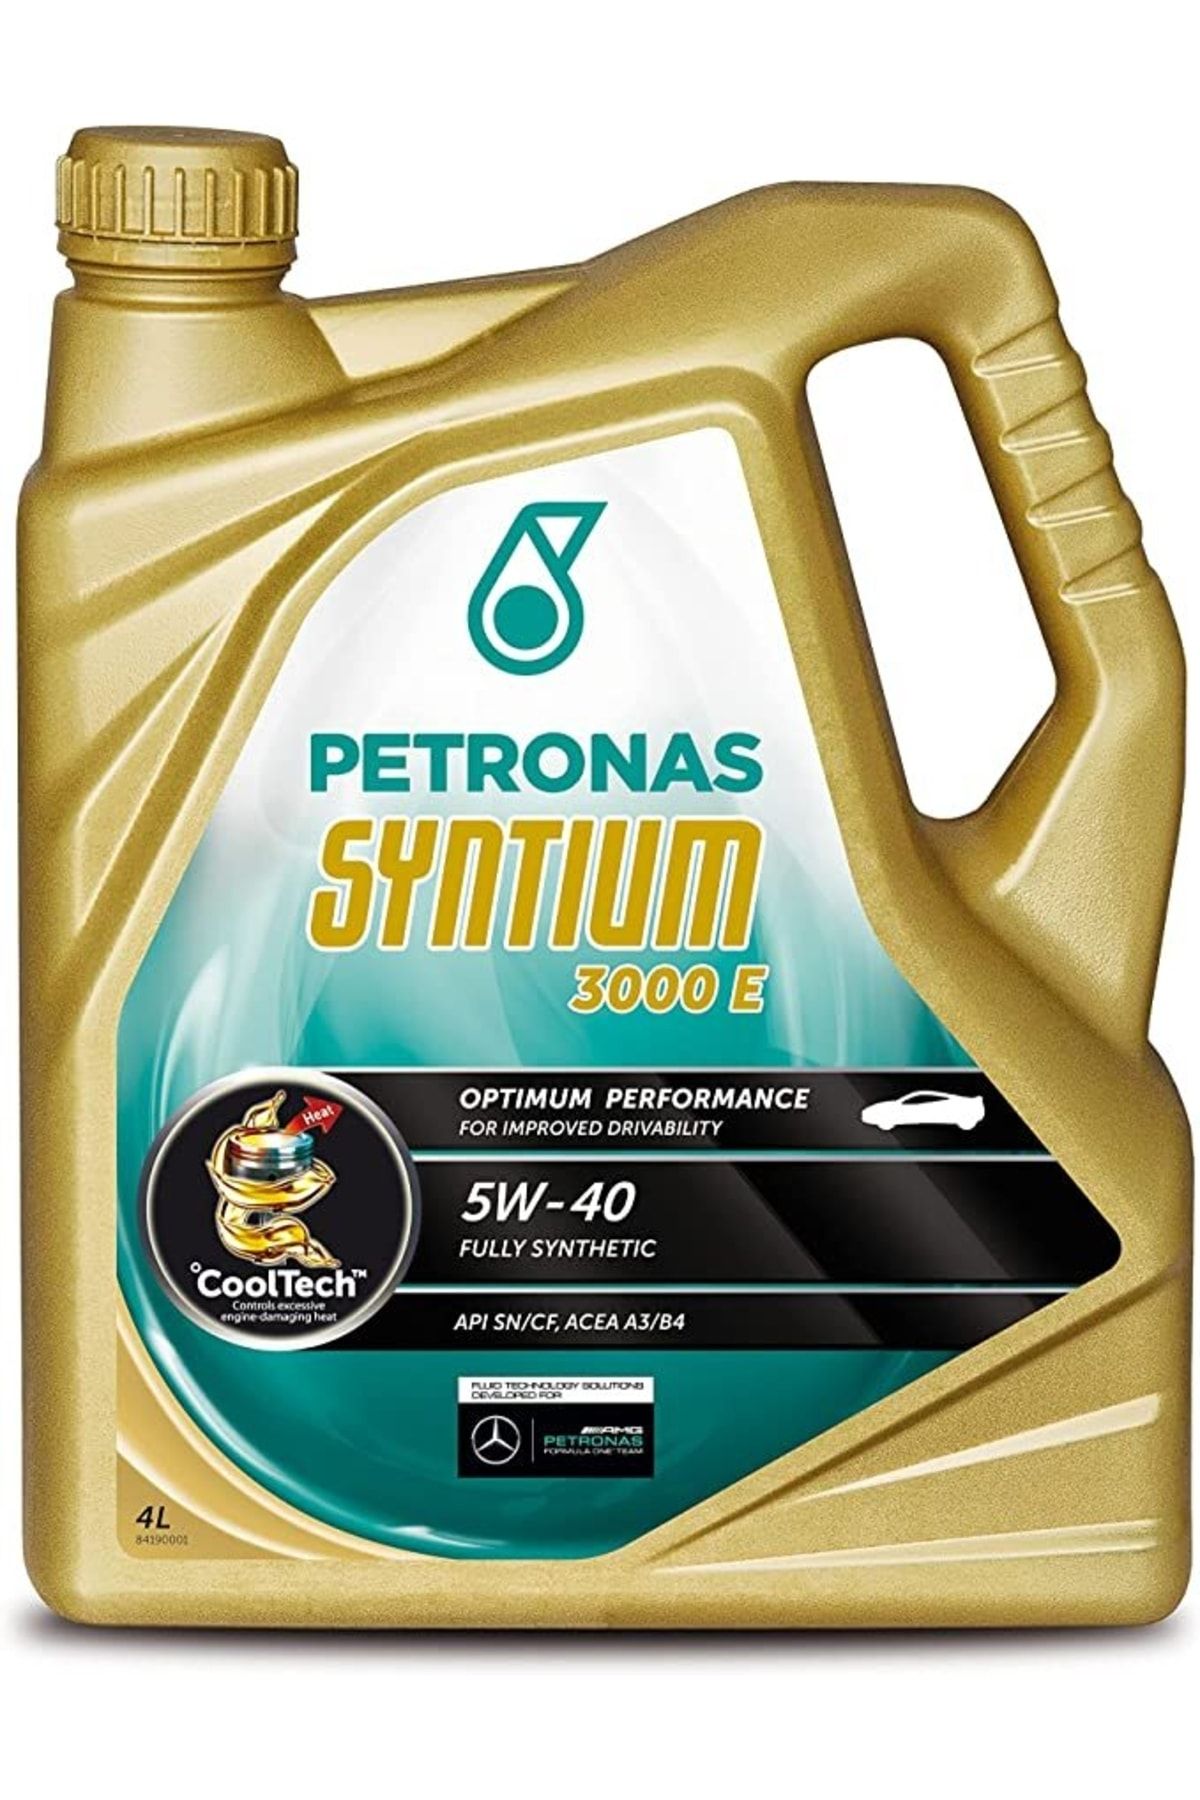 Petronas MULTİPOWER GAS 5W/40 3LT ÜRETİM 2023 Fiyatı, Yorumları - Trendyol